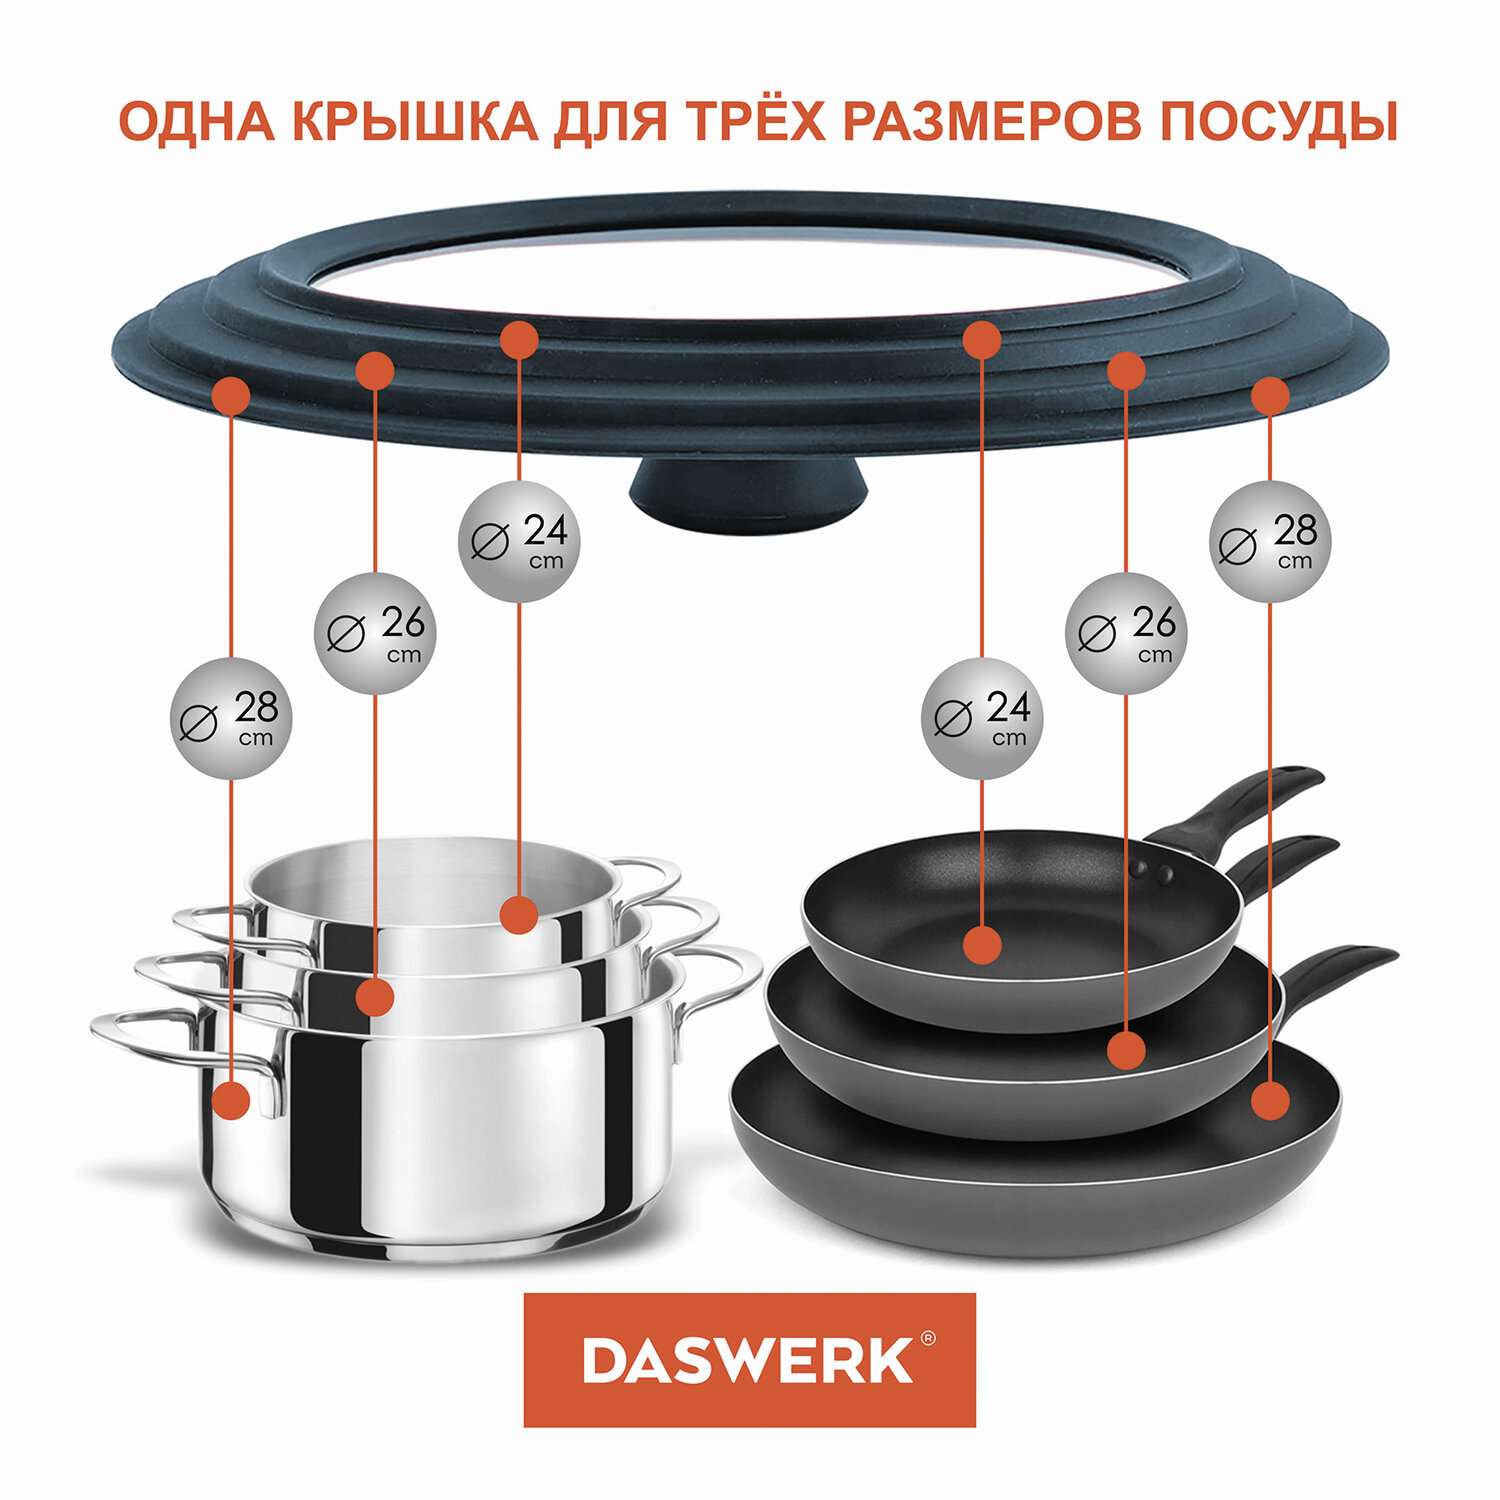 Крышка для сковороды DASWERK кастрюли посуды универсальная 3 размера 24-26-28см - фото 4